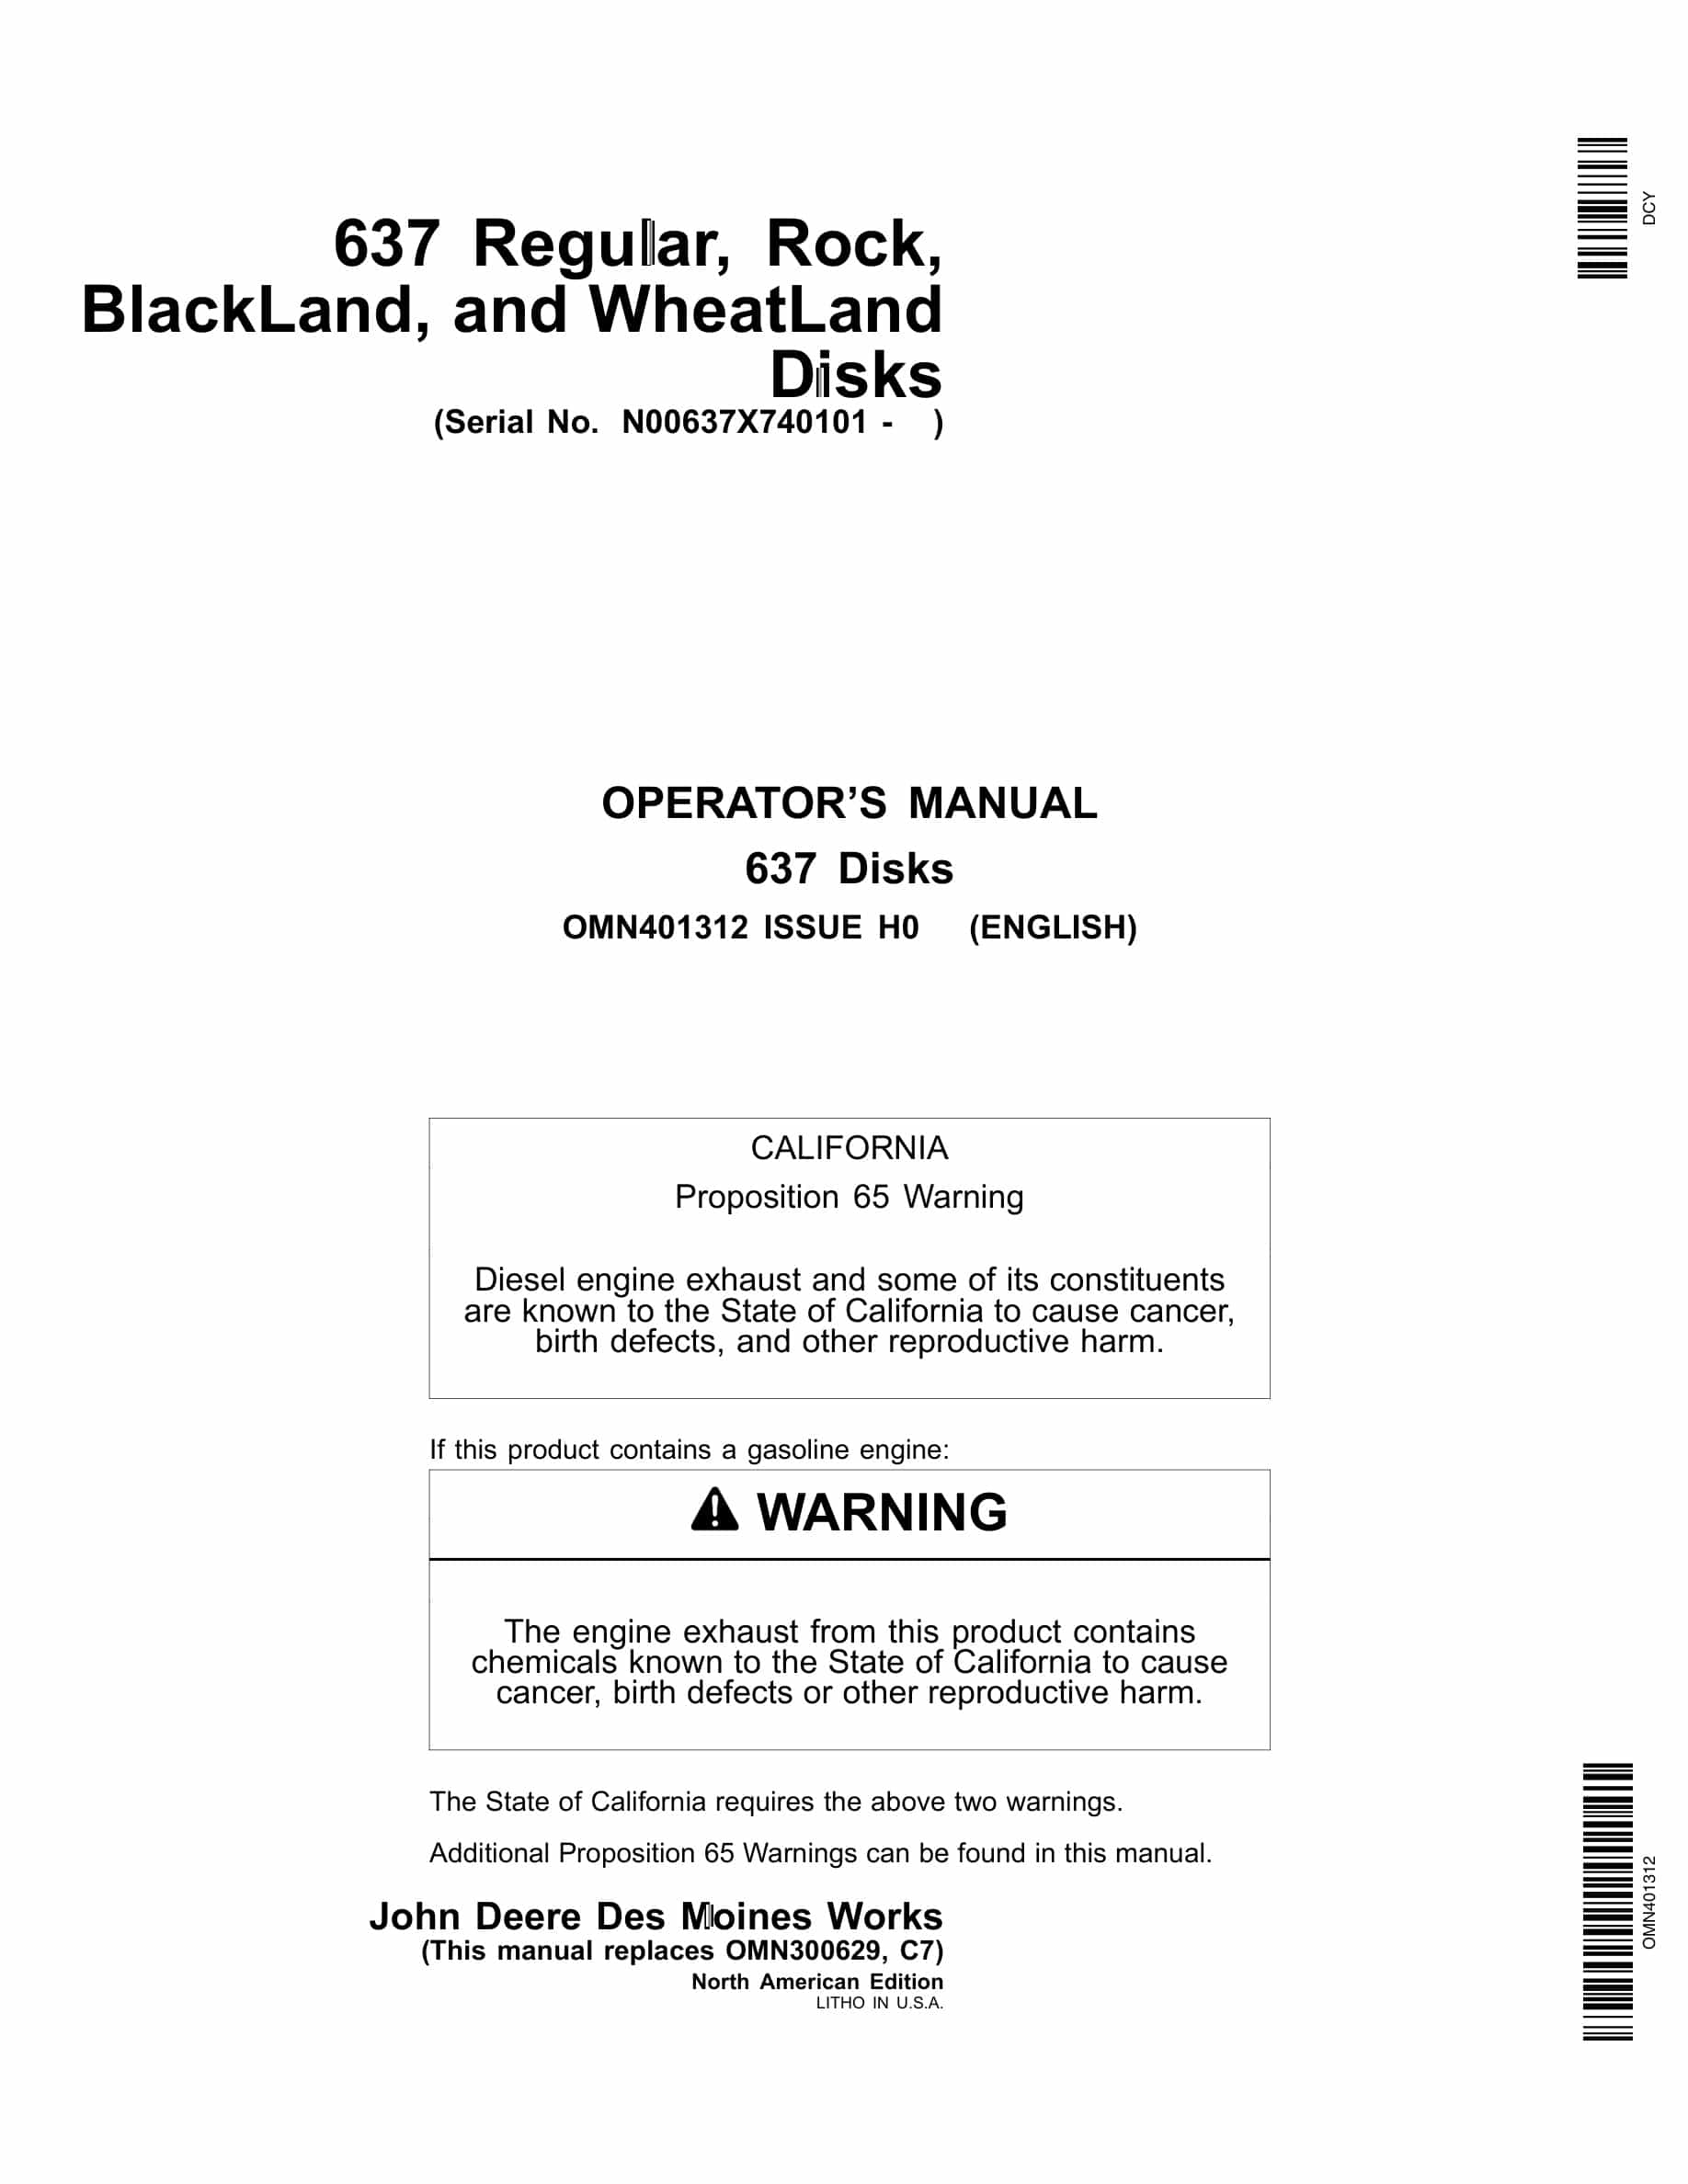 John Deere 637 Disks Operator Manual OMN401312-1